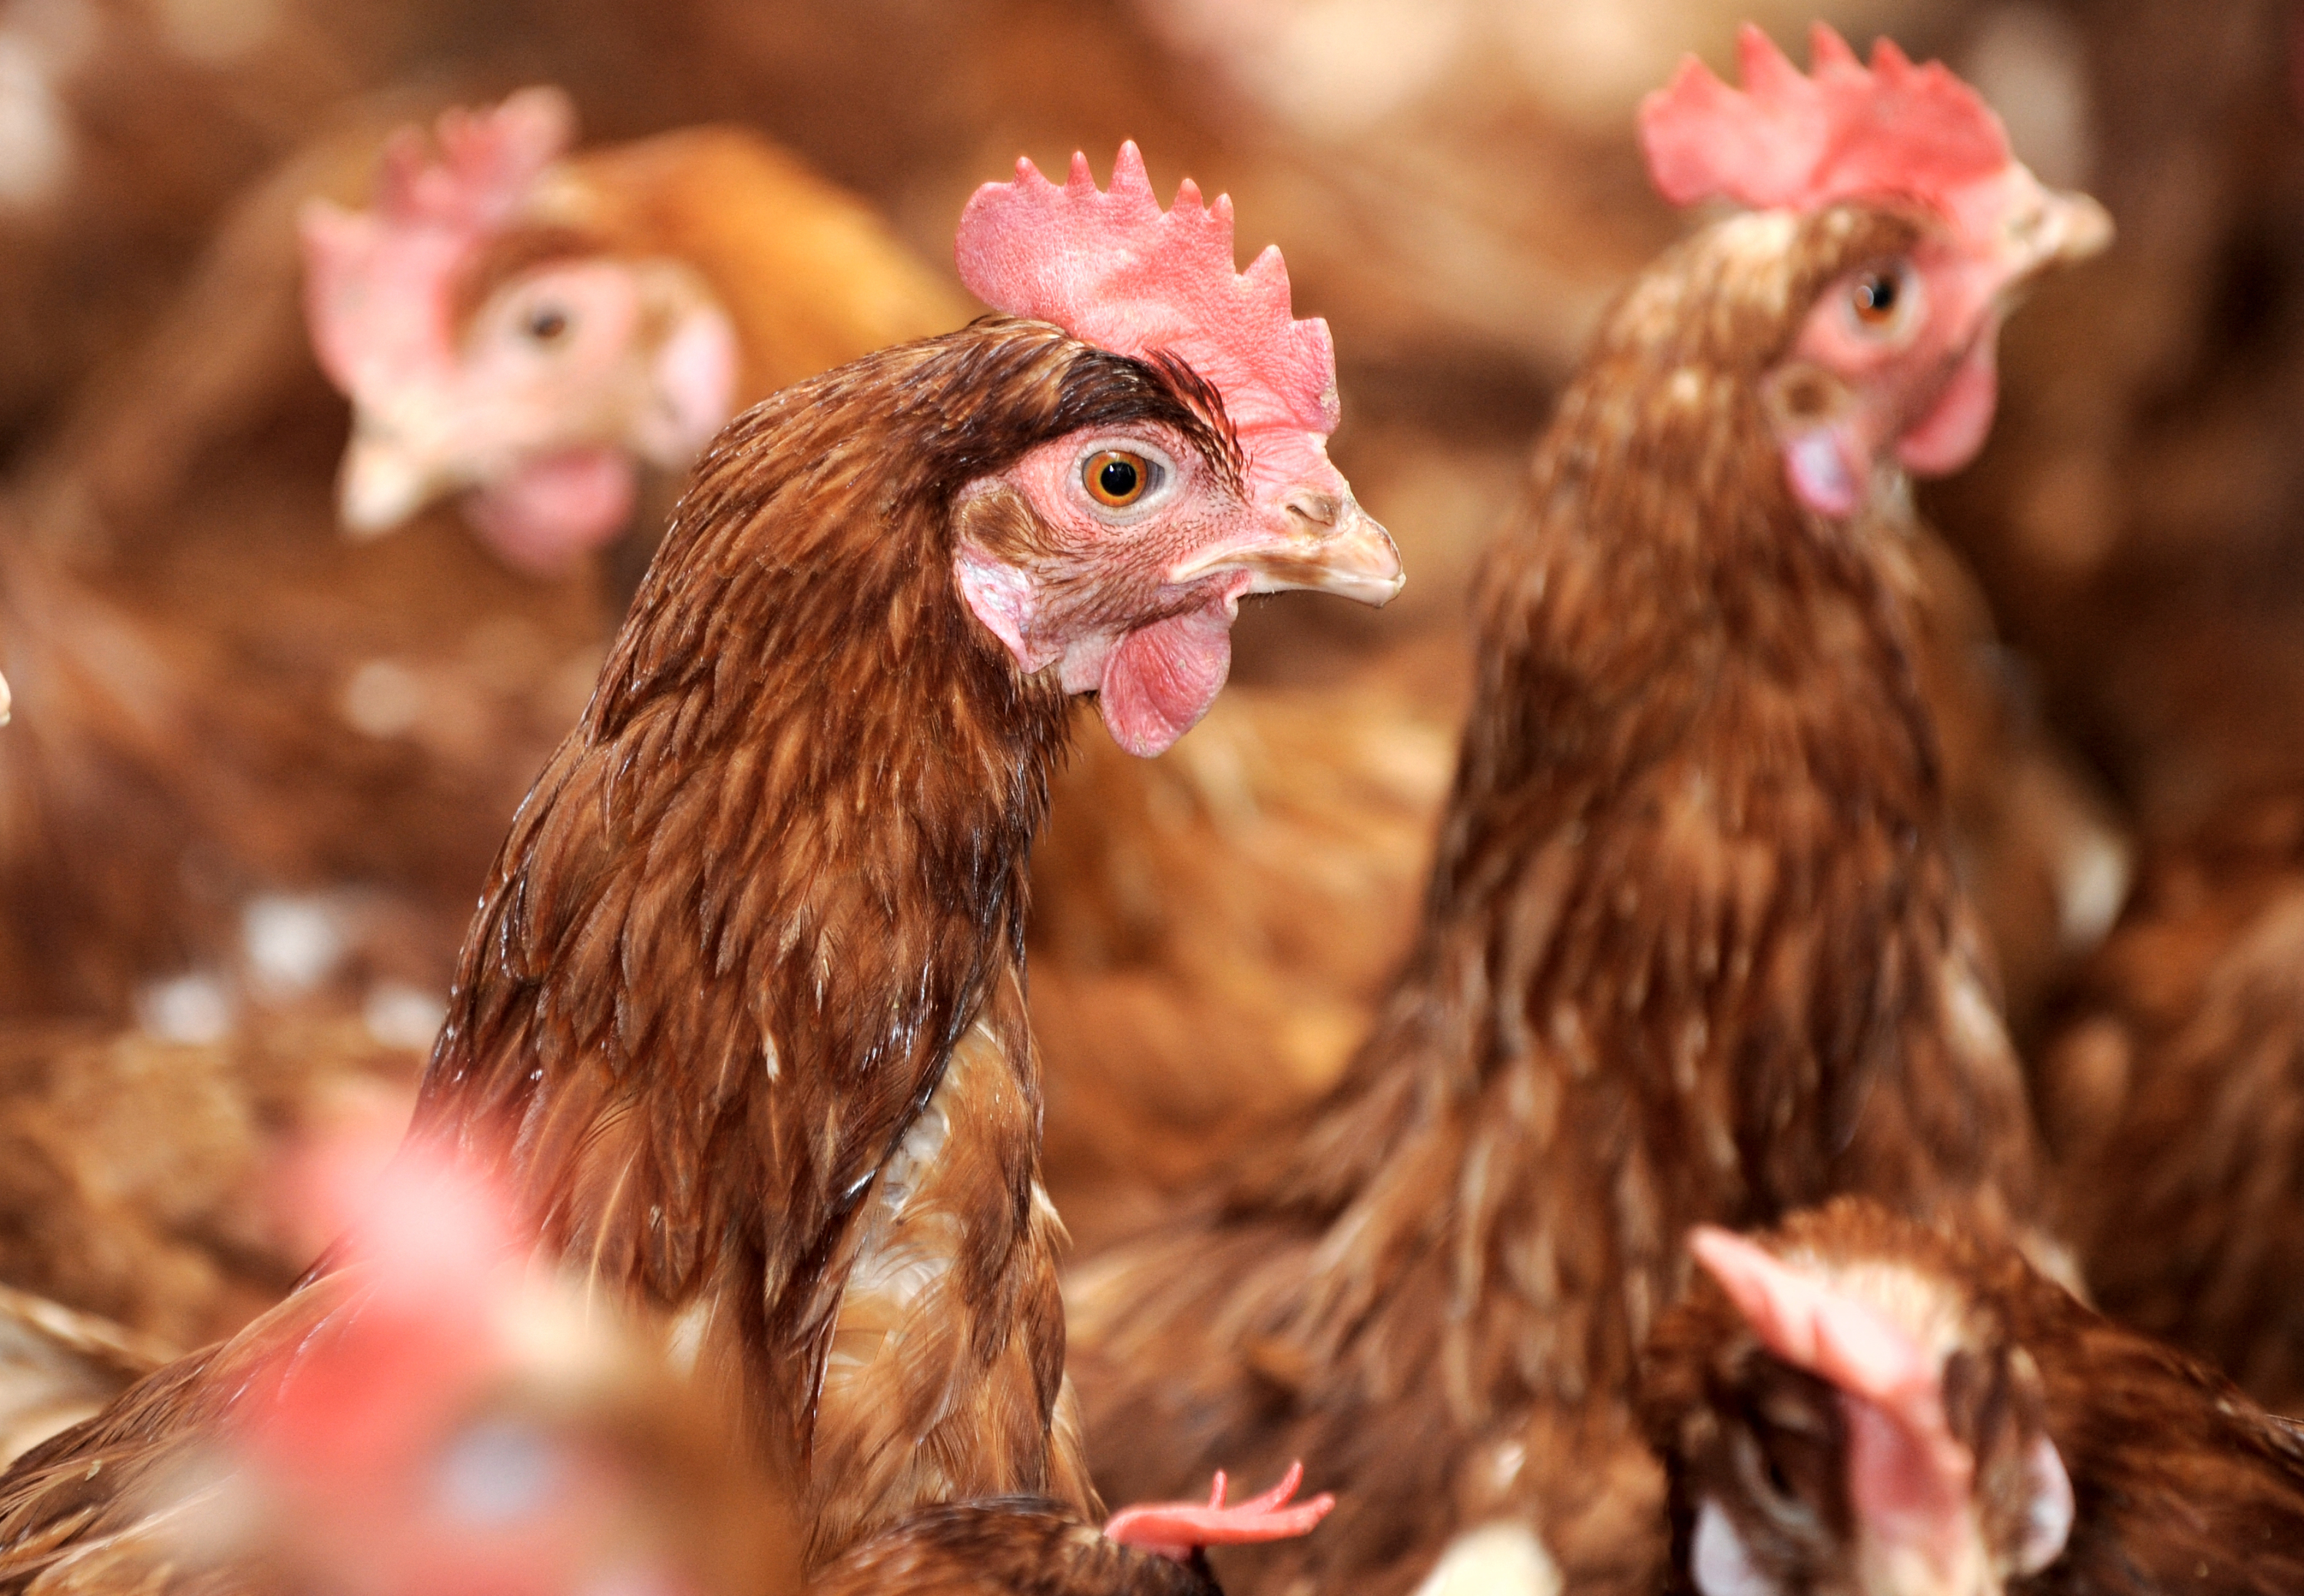 Deux-Sèvres : L214 dénonce des violences dans un élevage de poules, le groupe réfute